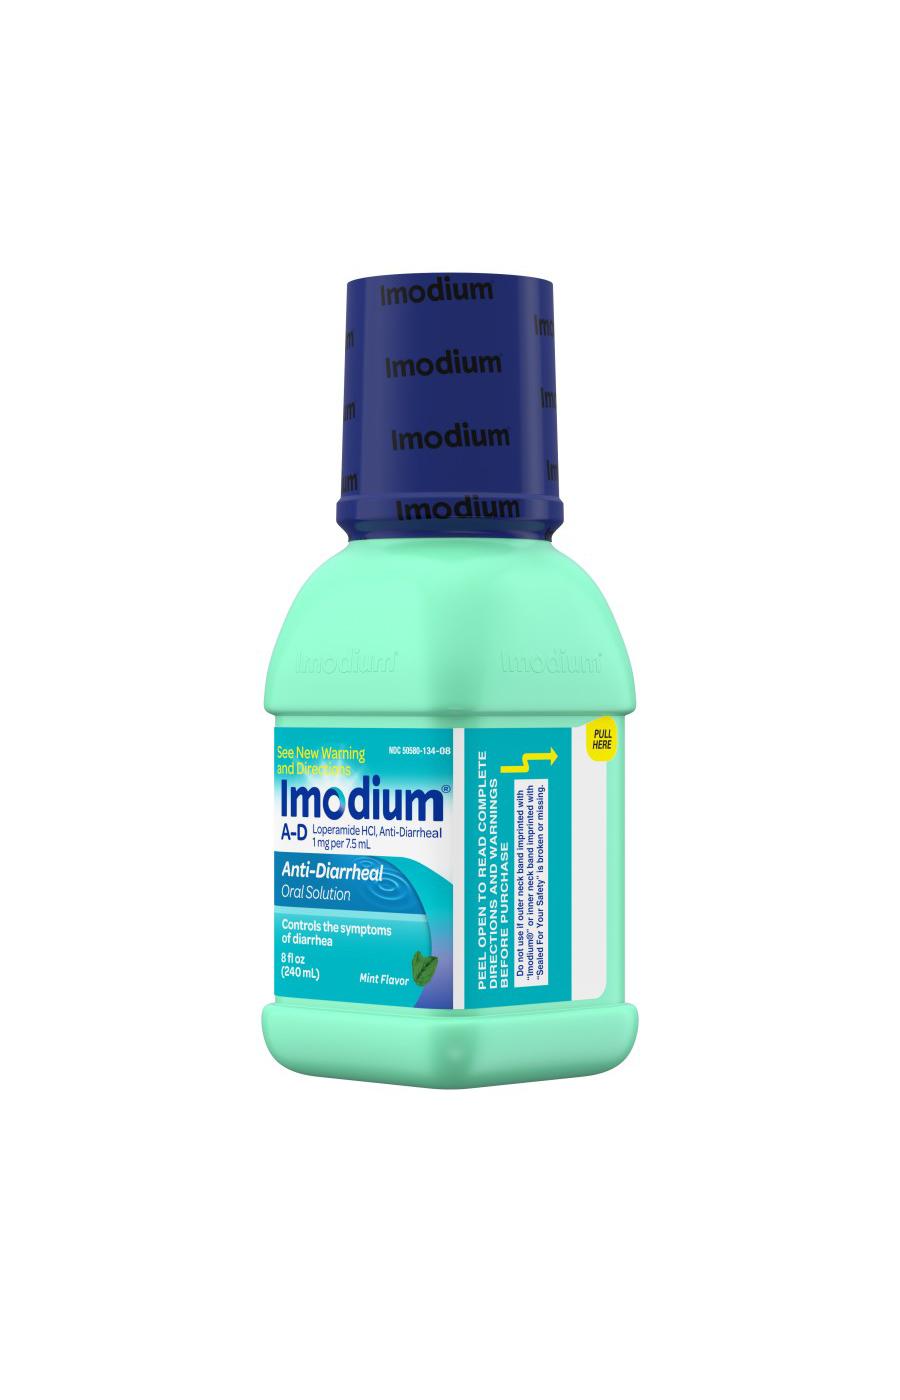 Imodium A-D Liquid; image 6 of 7